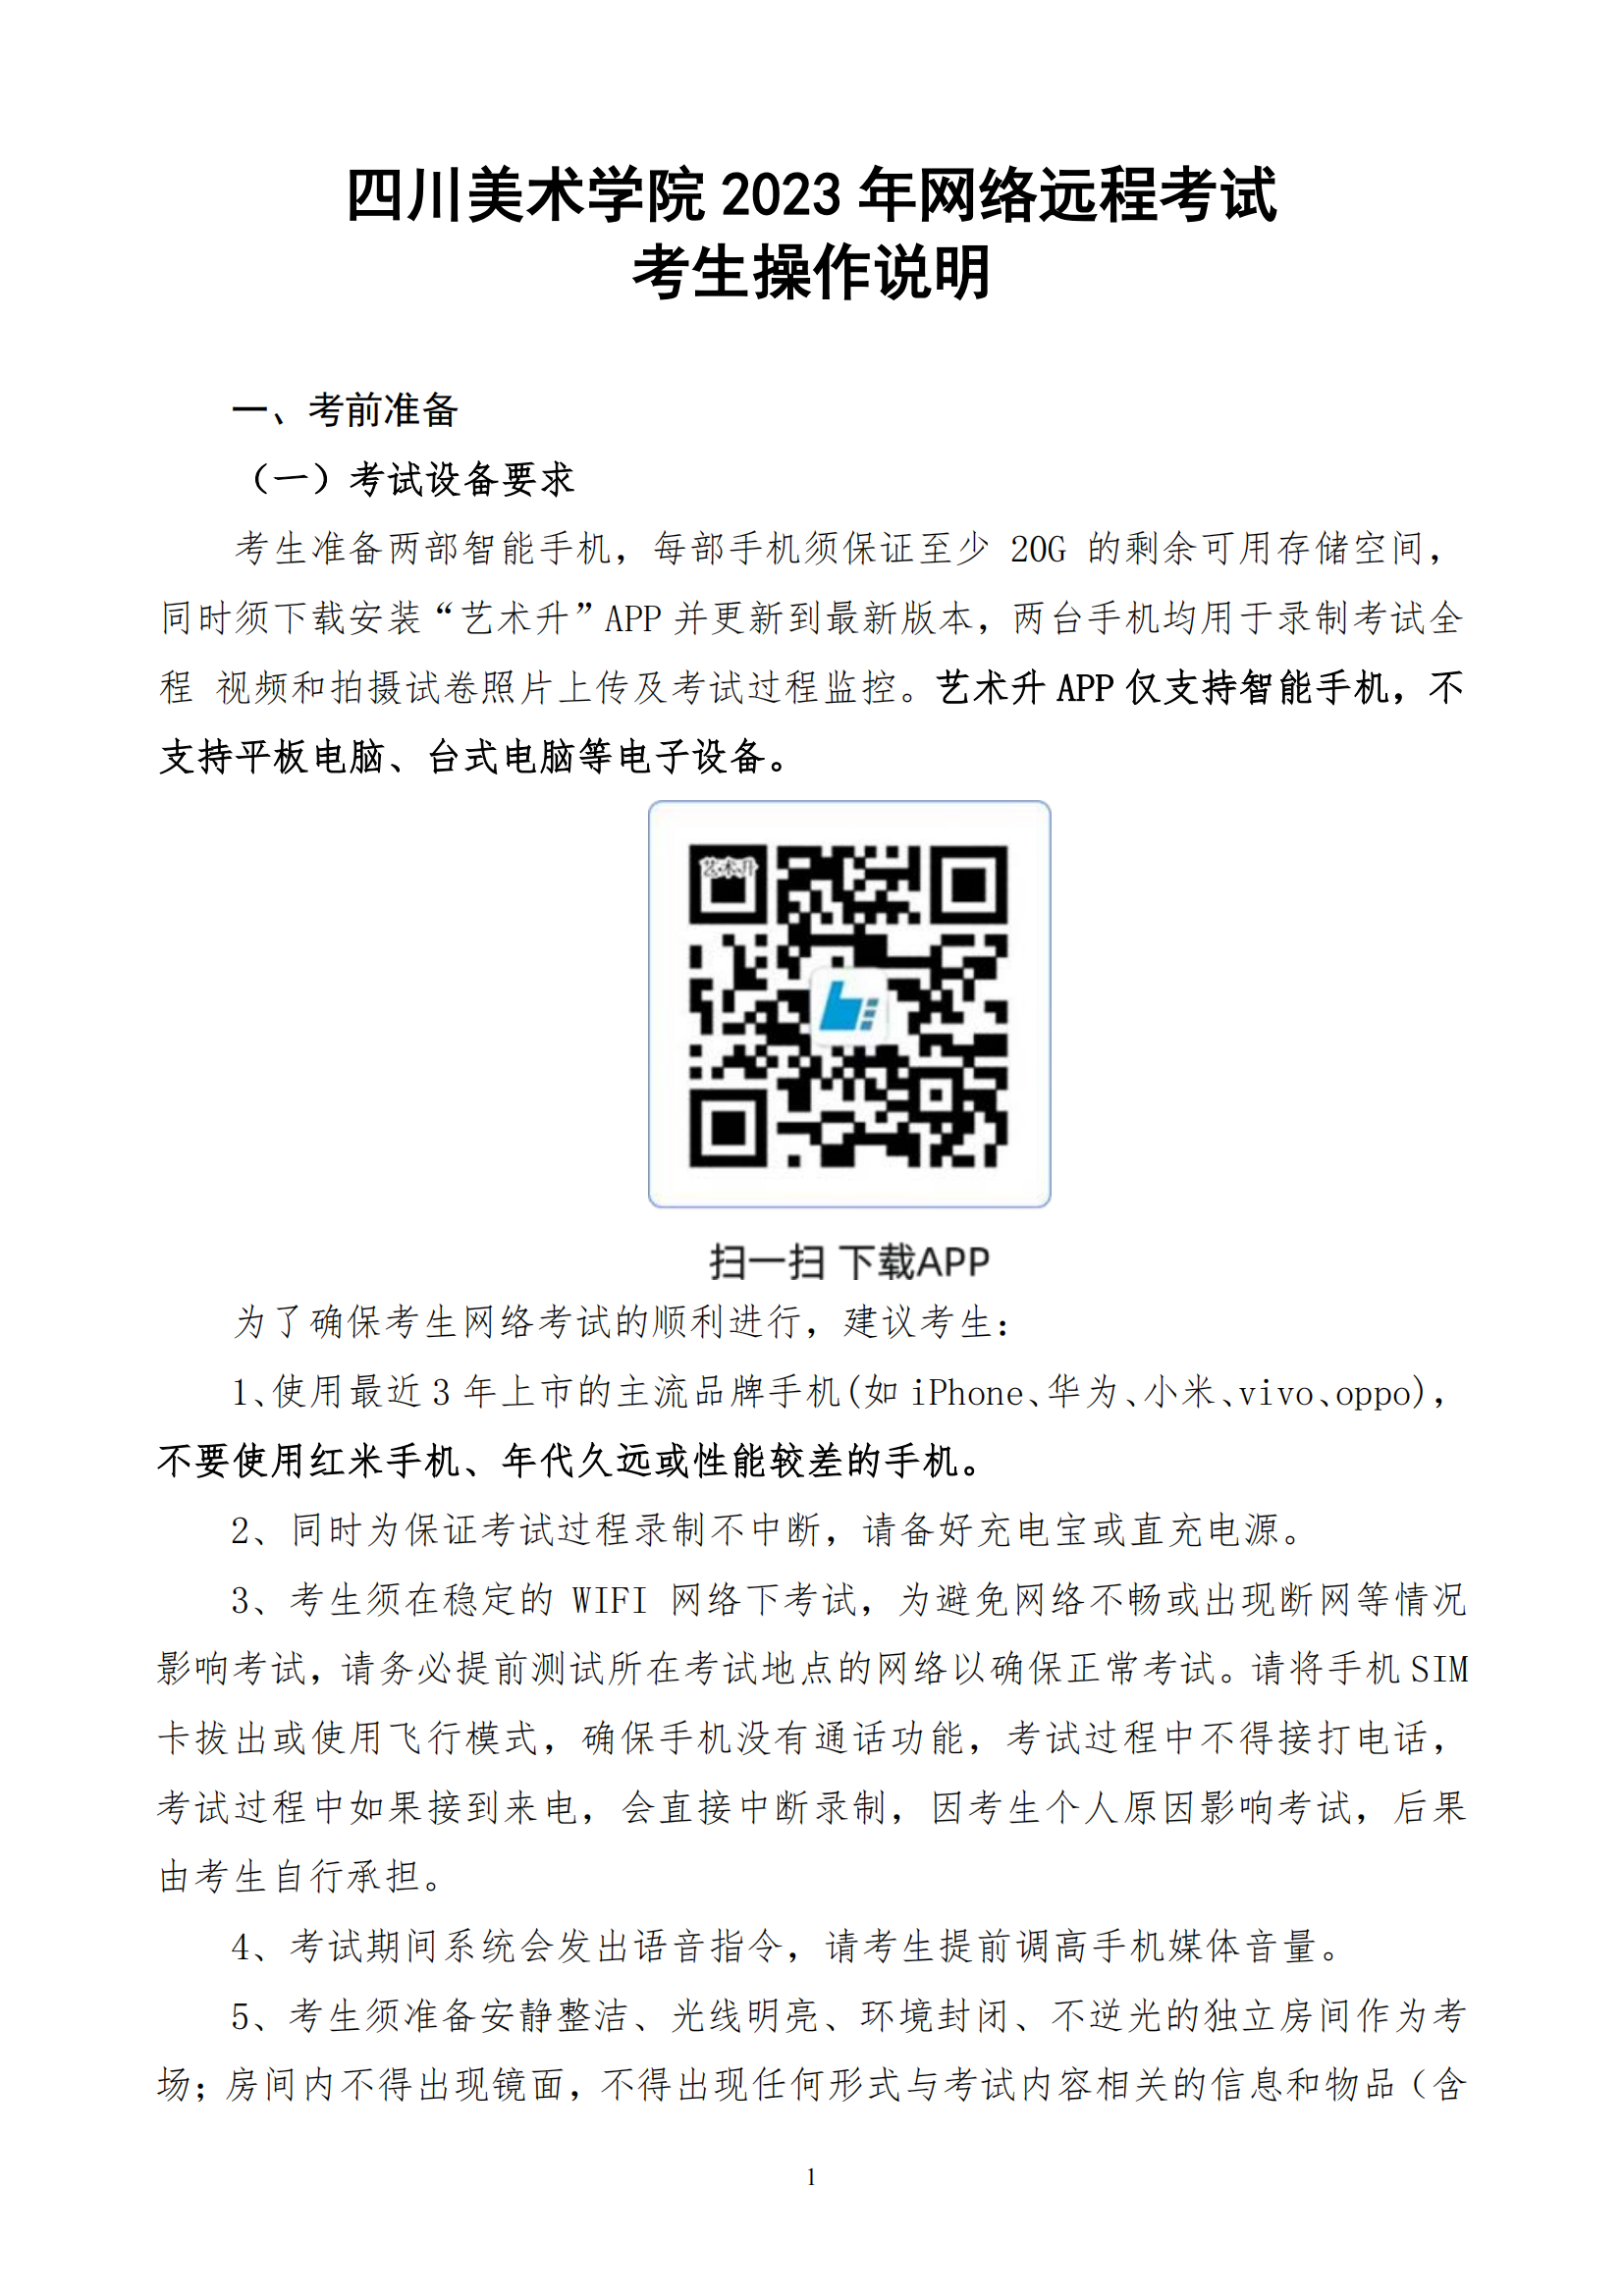 附件3 四川美术学院2023年网络远程考试考生操作说明_00.png